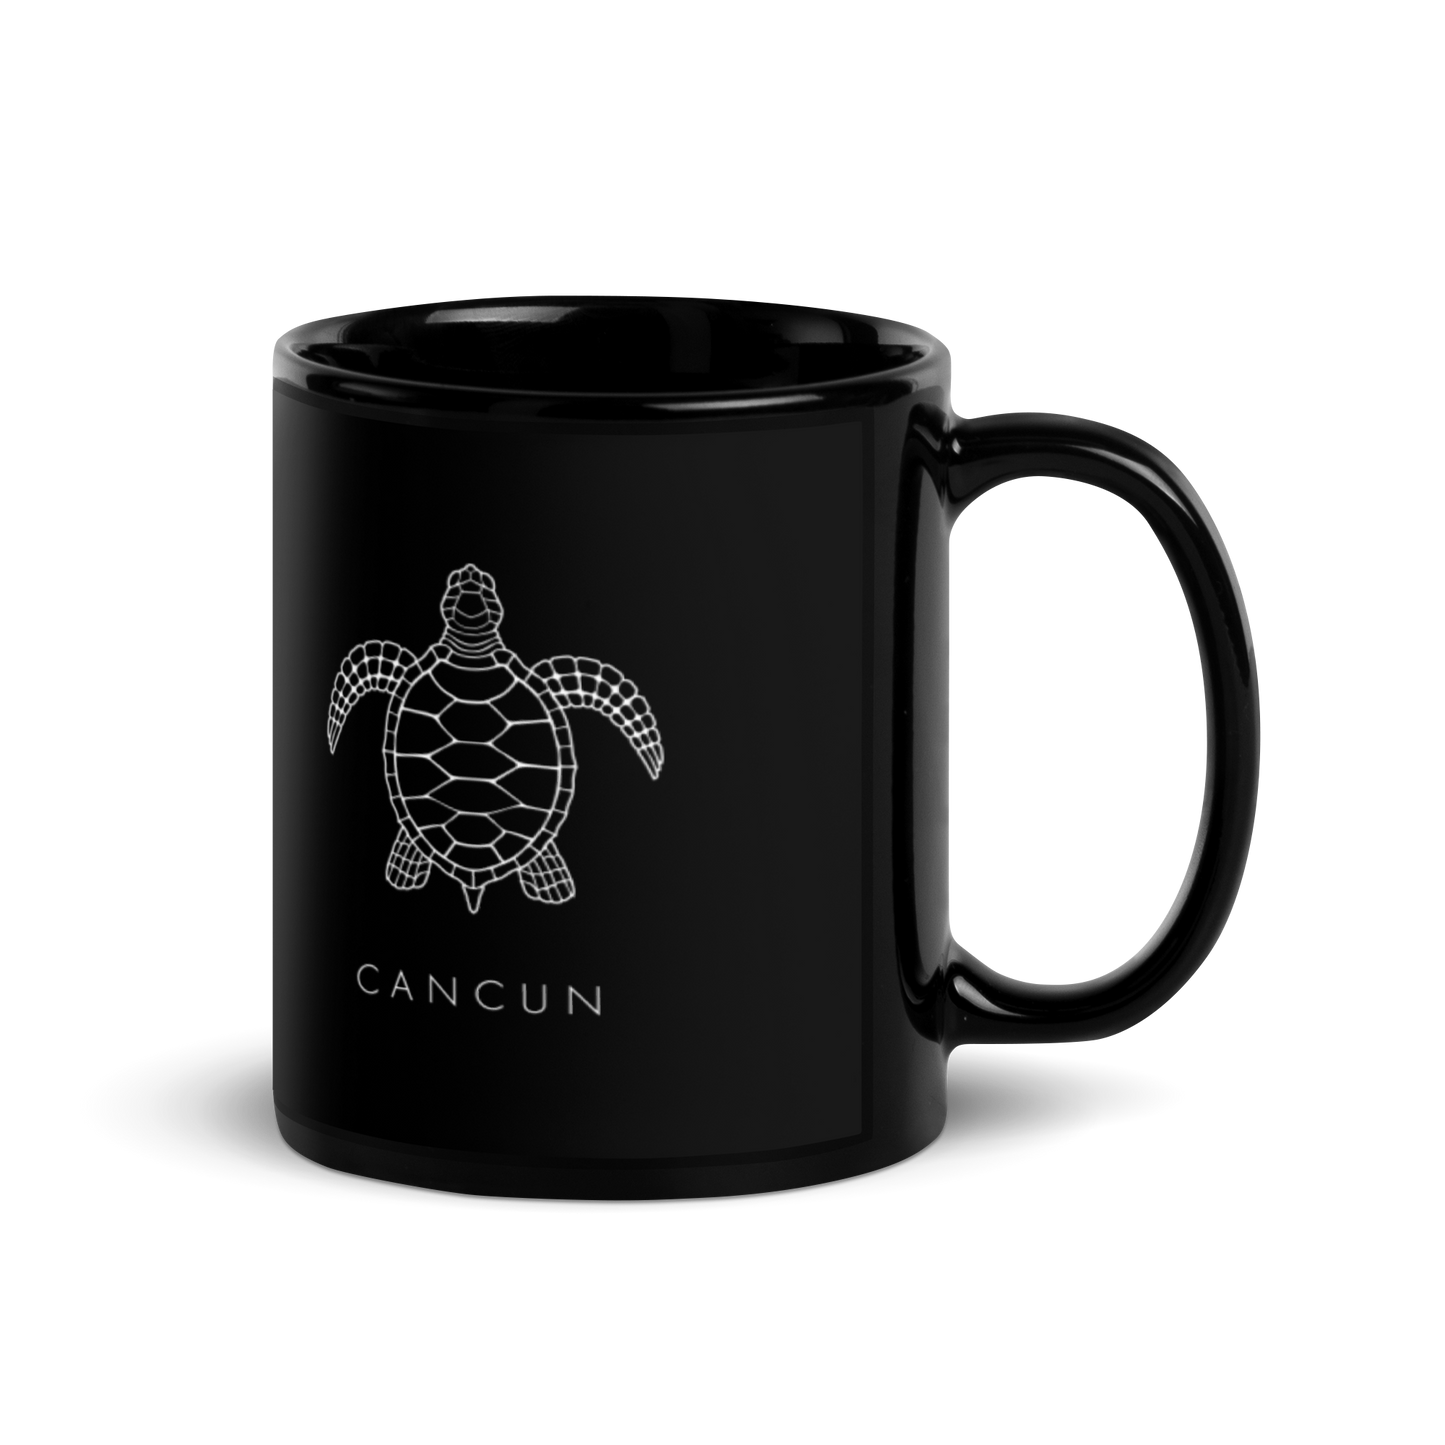 CANCUN - Iconic Sea Turtle Mug